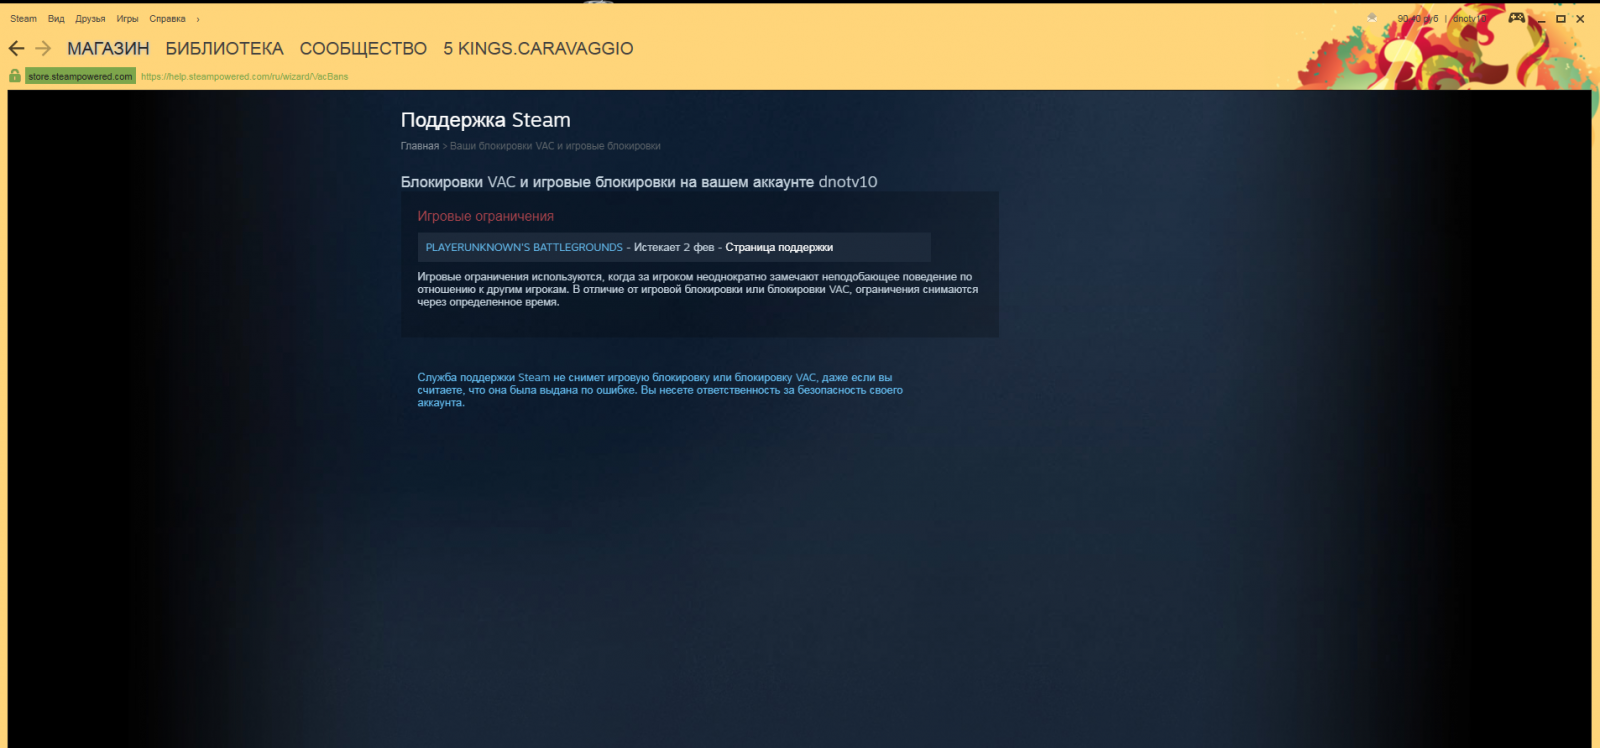 Steam в украине заблокирован или нет фото 57